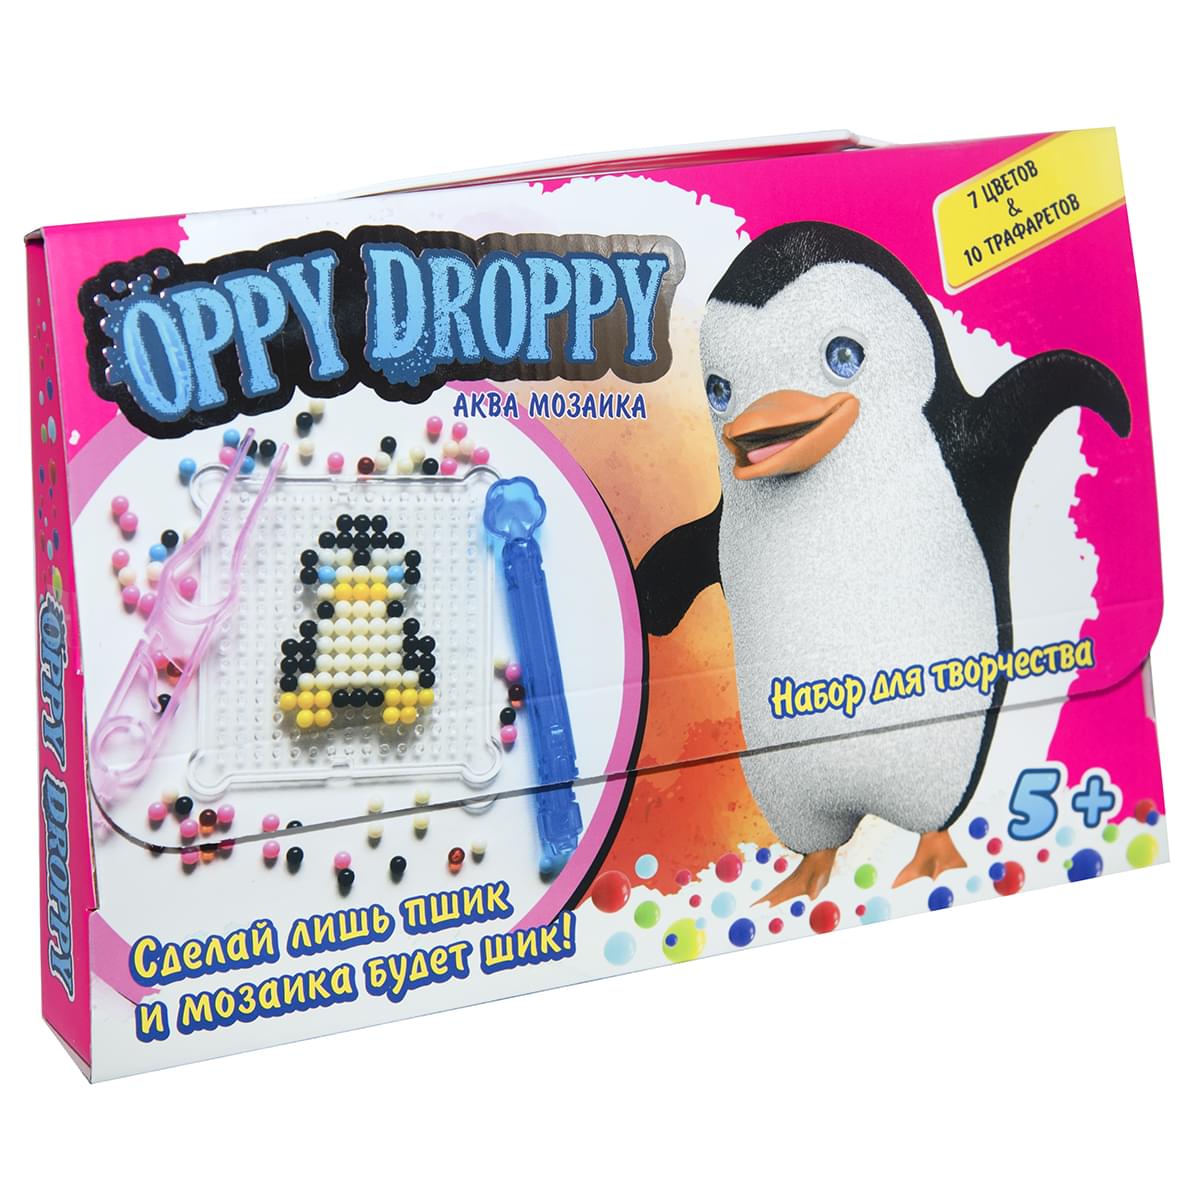 Set for creativity "Oppy Droppy" for girls (rus) (30610)